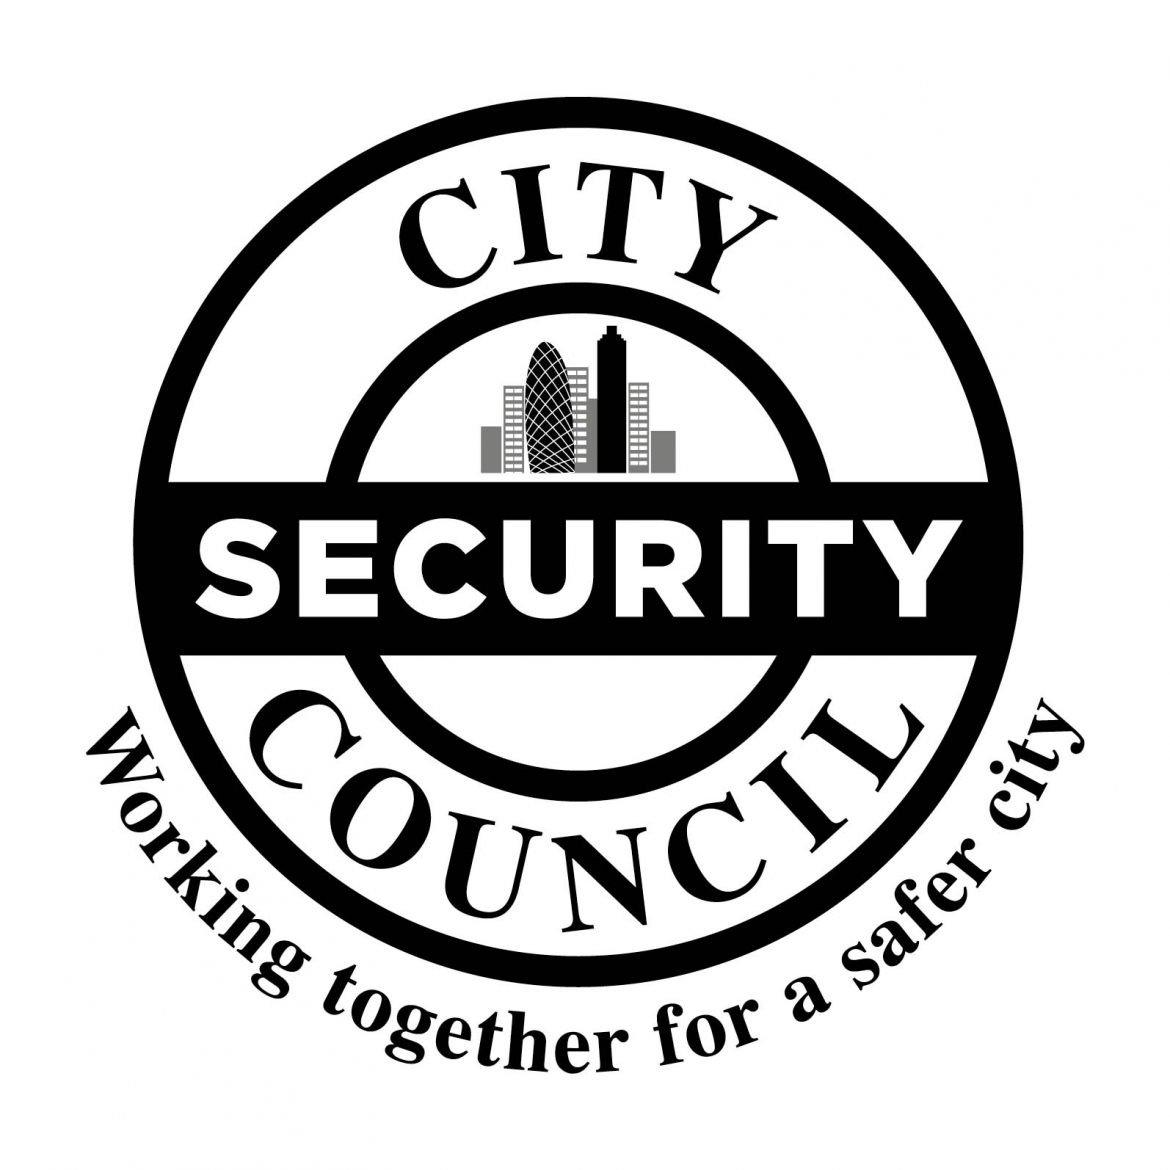 City Security Council logo